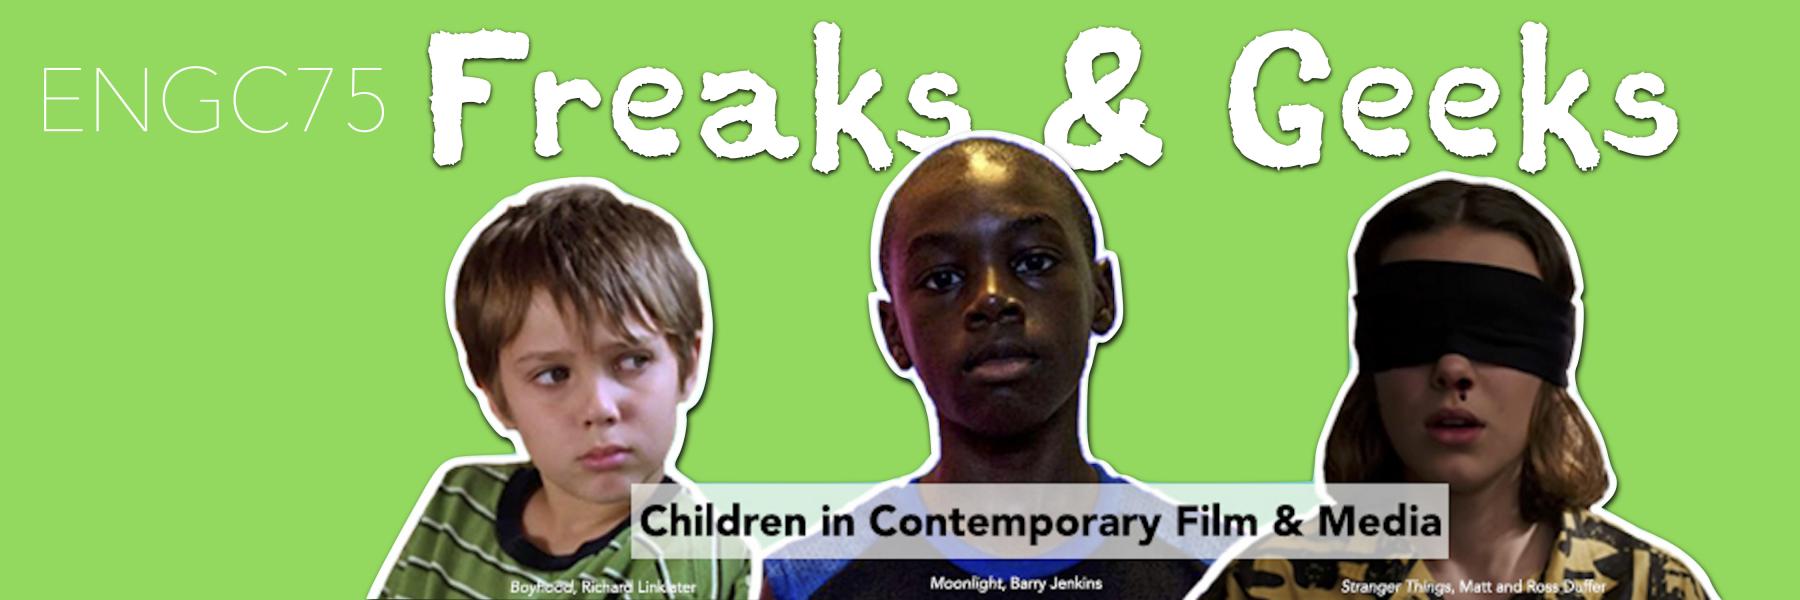 ENGC75: Children in Contemporary Film & Media